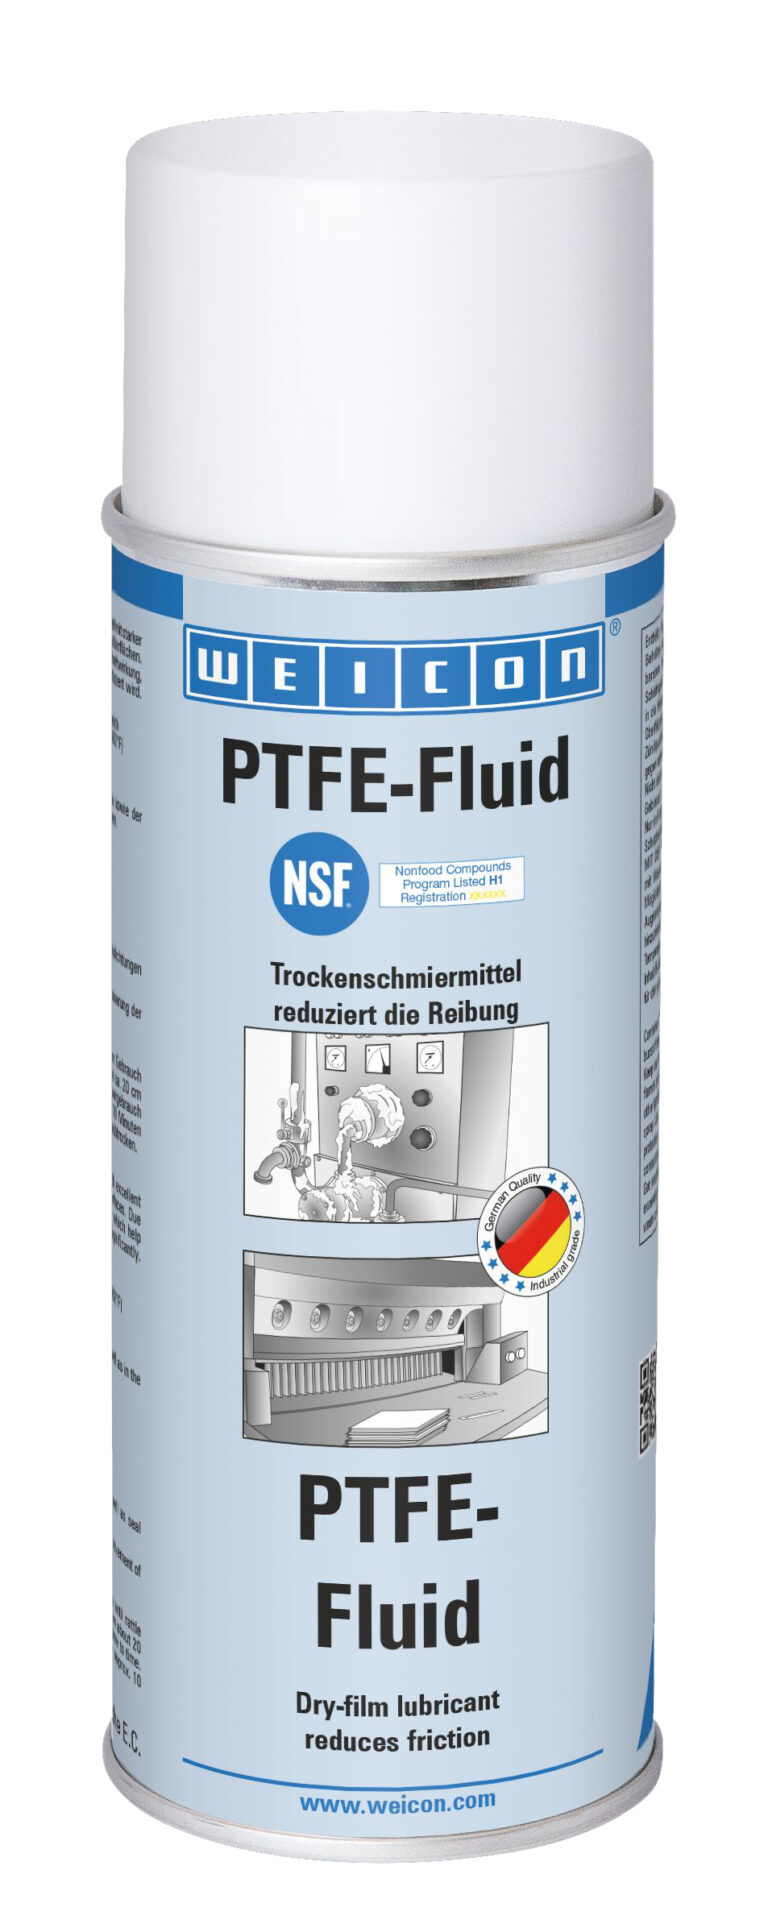 PTFE-Fluid